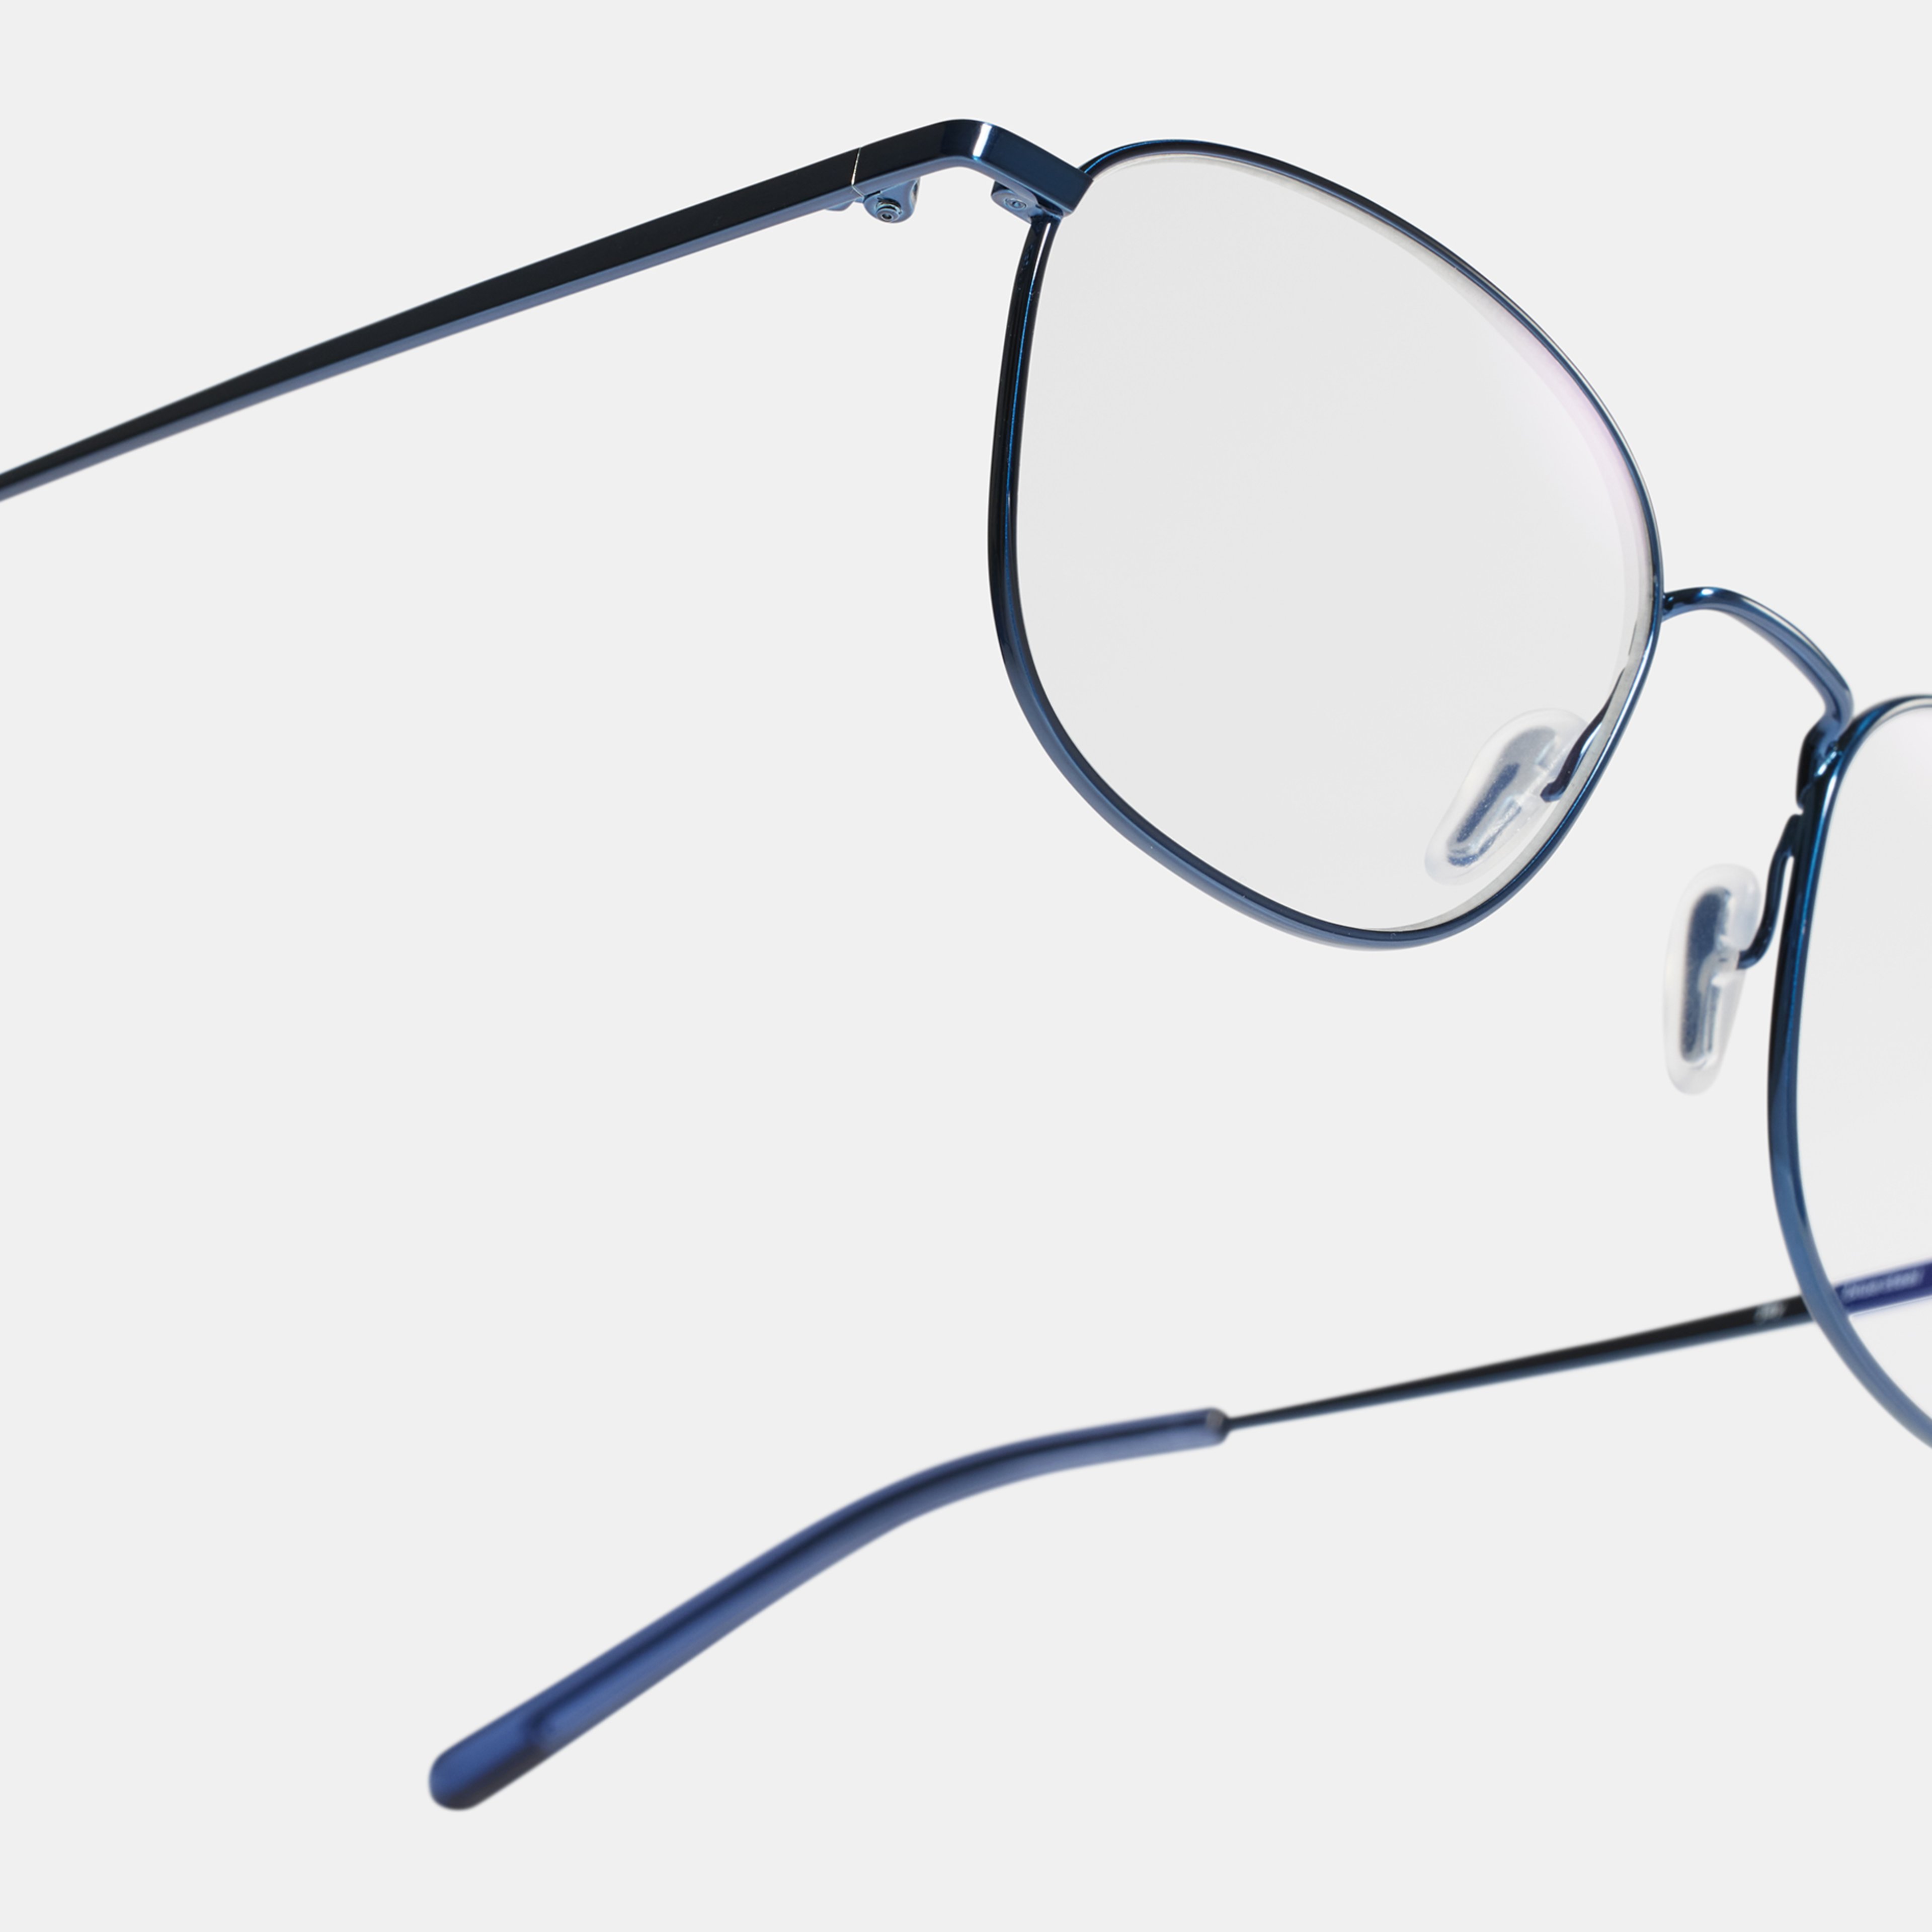 Ace & Tate Brillen | Vierkant Metaal in Blauw